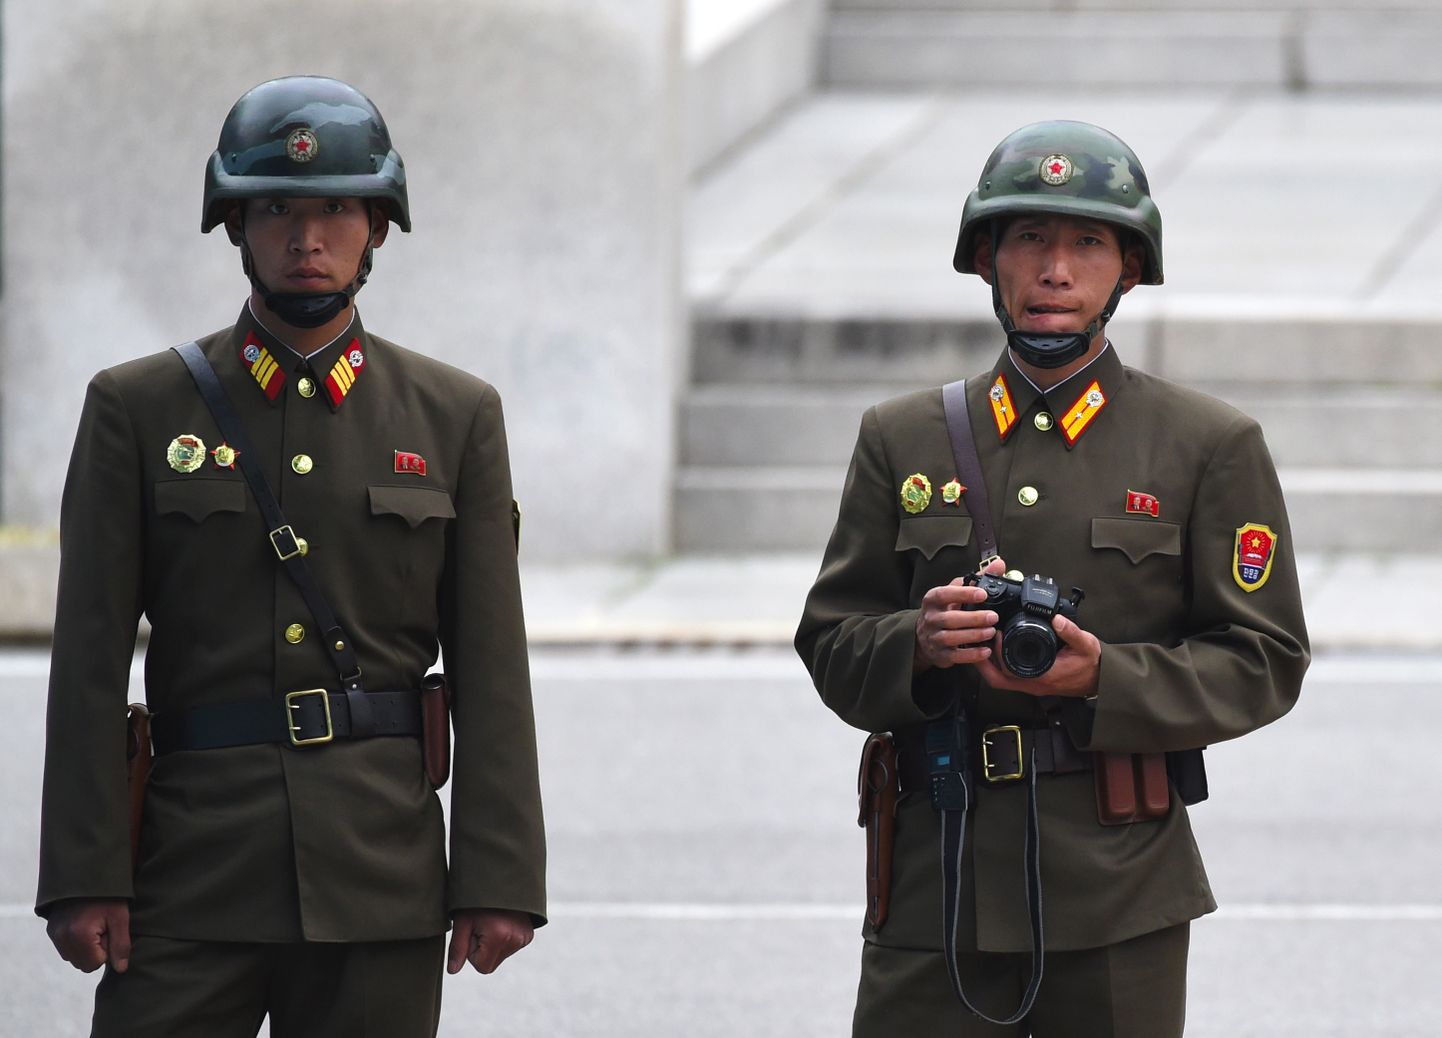 Ziemeļkorejas karavīri Demilitarizētajā zonā ASV viceprezidenta Maika Pensa vizītes laikā 2017. gadā.